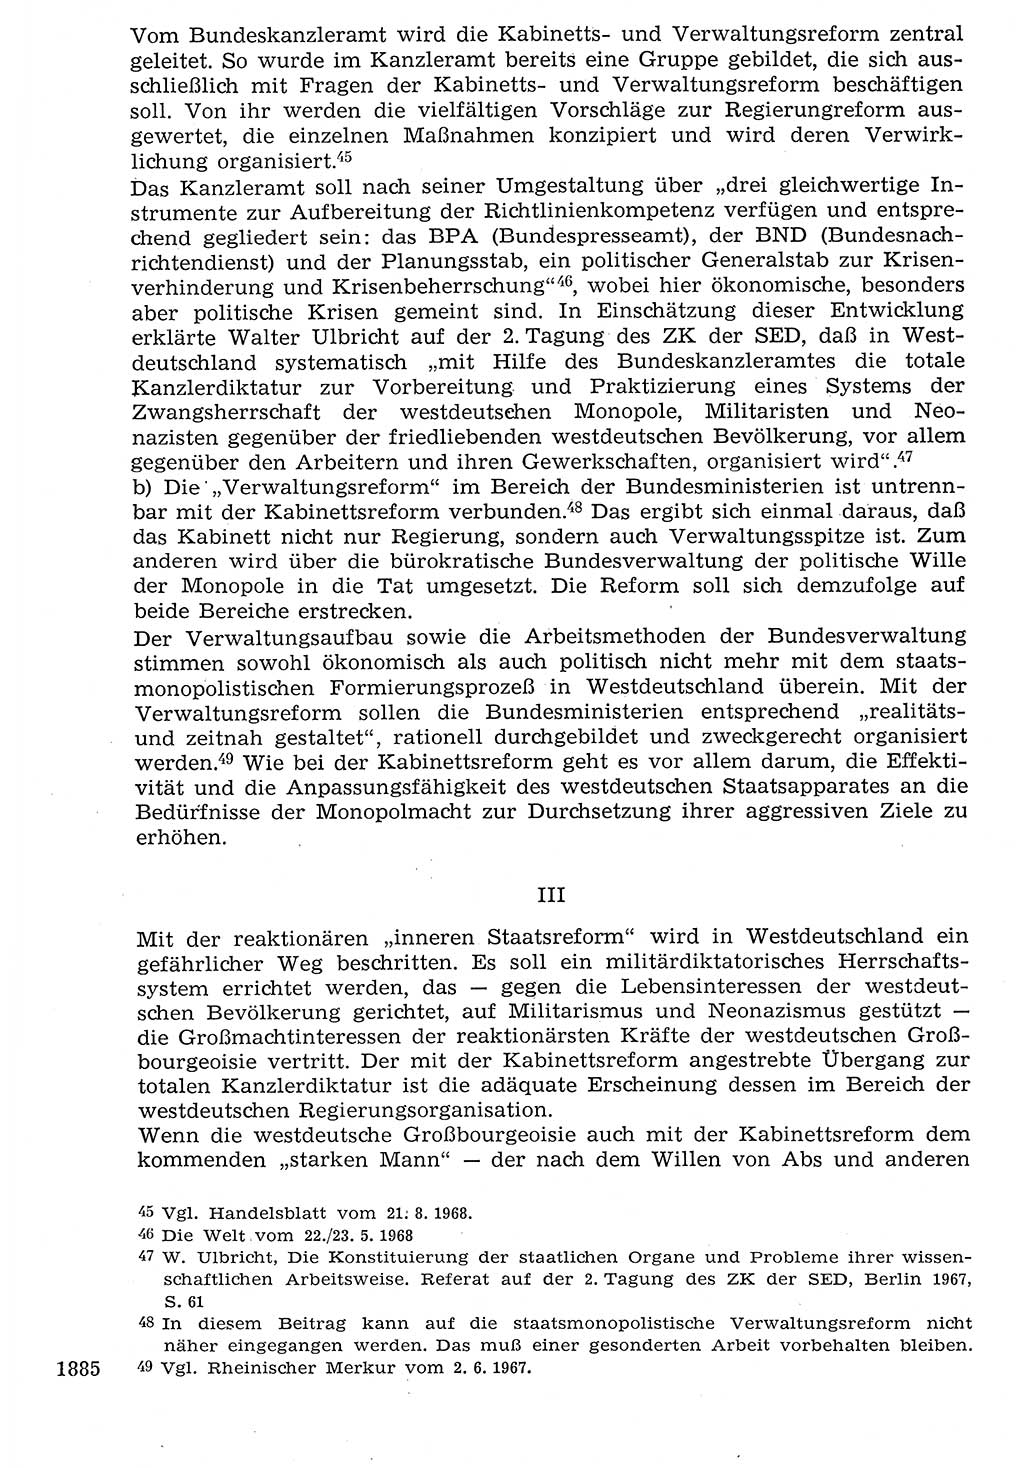 Staat und Recht (StuR), 17. Jahrgang [Deutsche Demokratische Republik (DDR)] 1968, Seite 1885 (StuR DDR 1968, S. 1885)